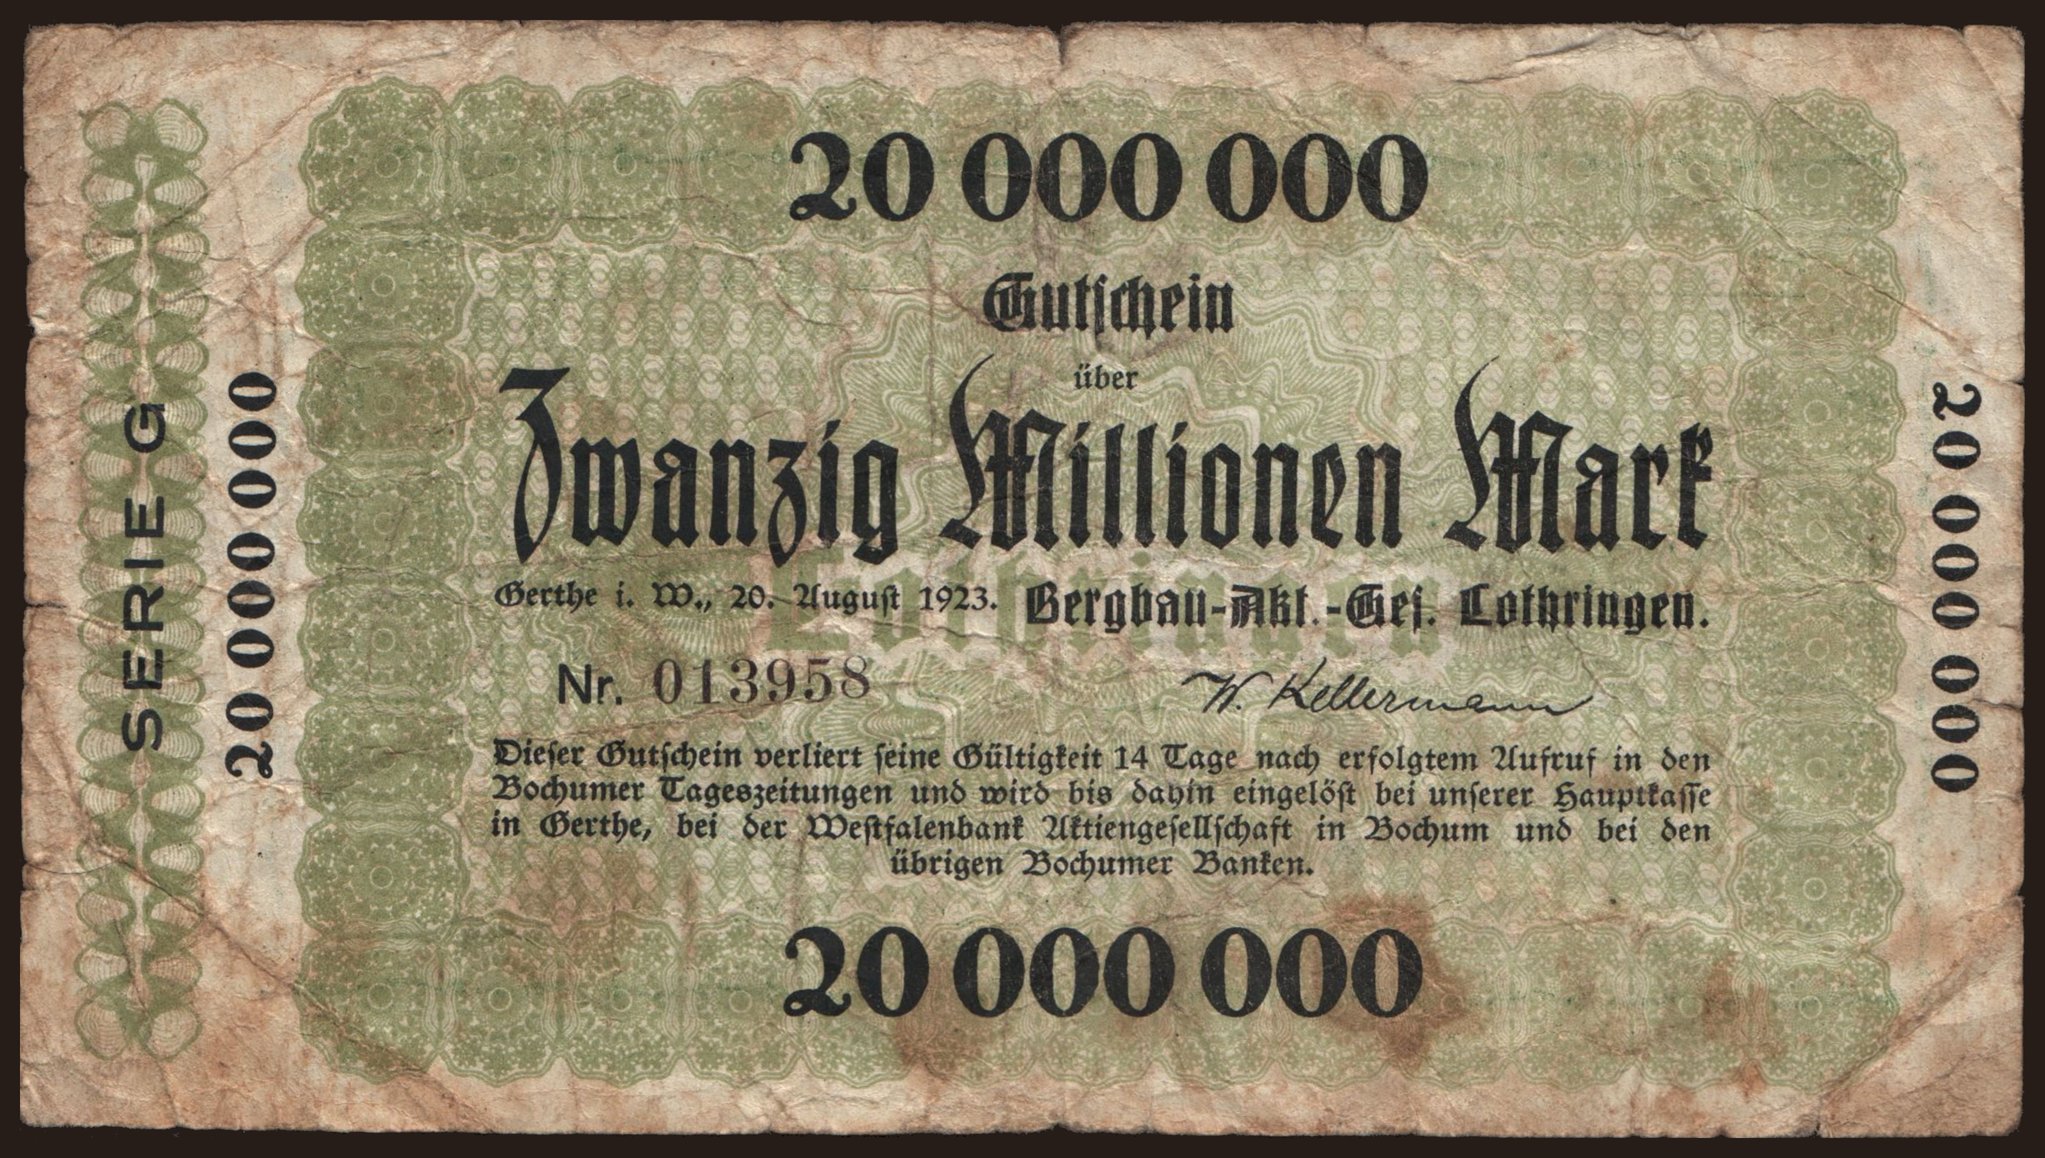 Gerthe/ Bergbau Aktiengesellschaft Lothringen, 20.000.000 Mark, 1923